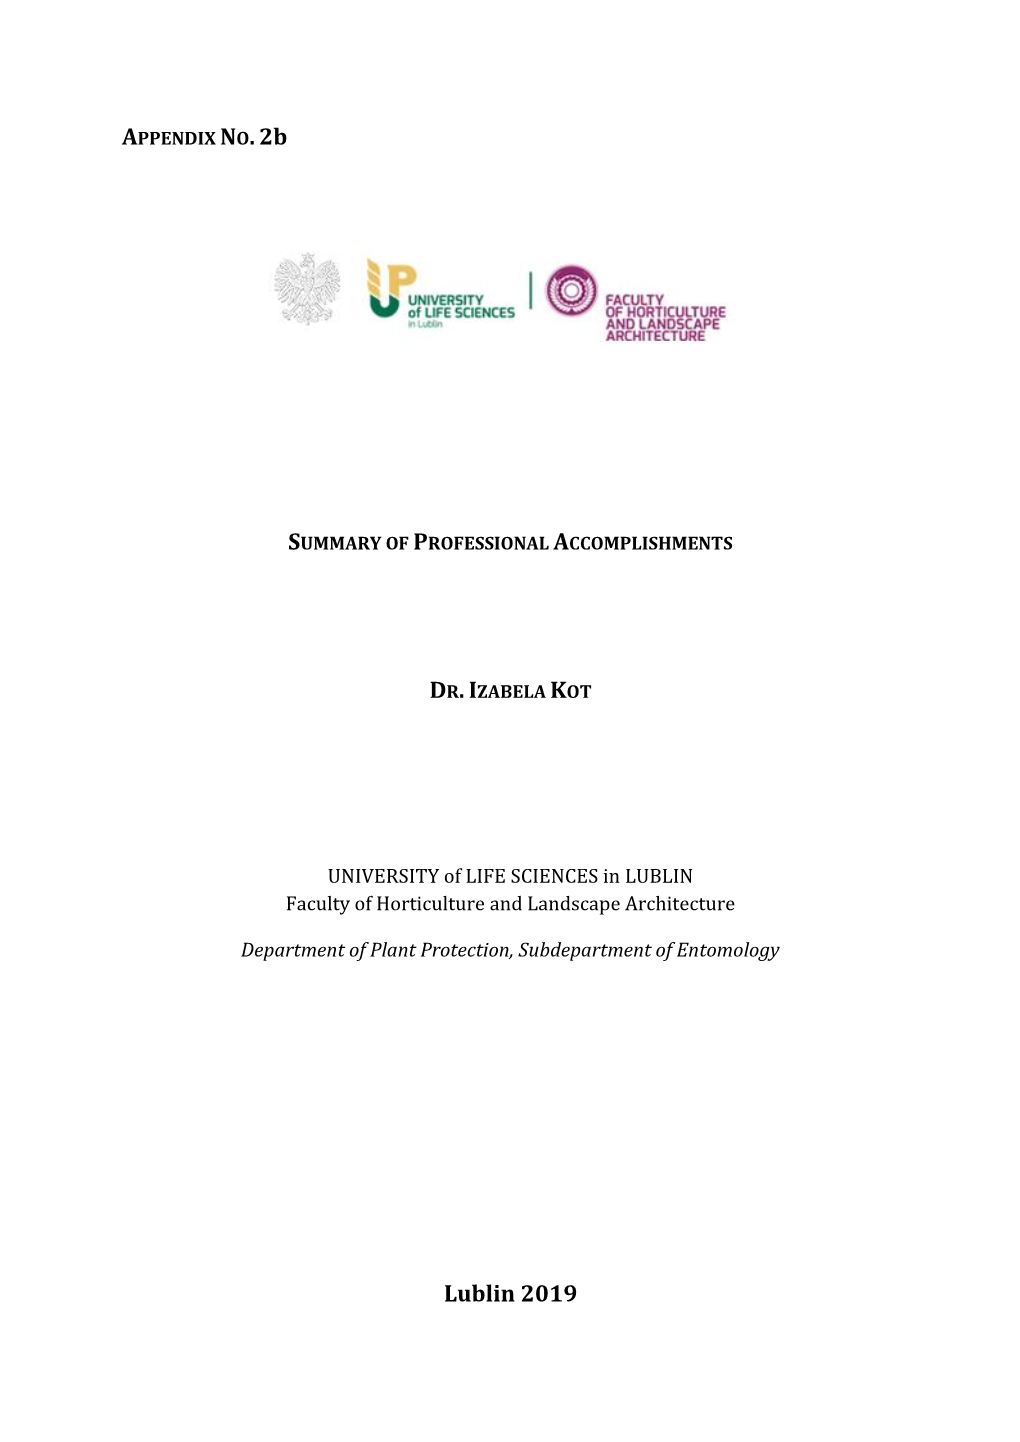 Appendix No. 2B Summary of Professional Accomplishments Dr. Izabela Kot